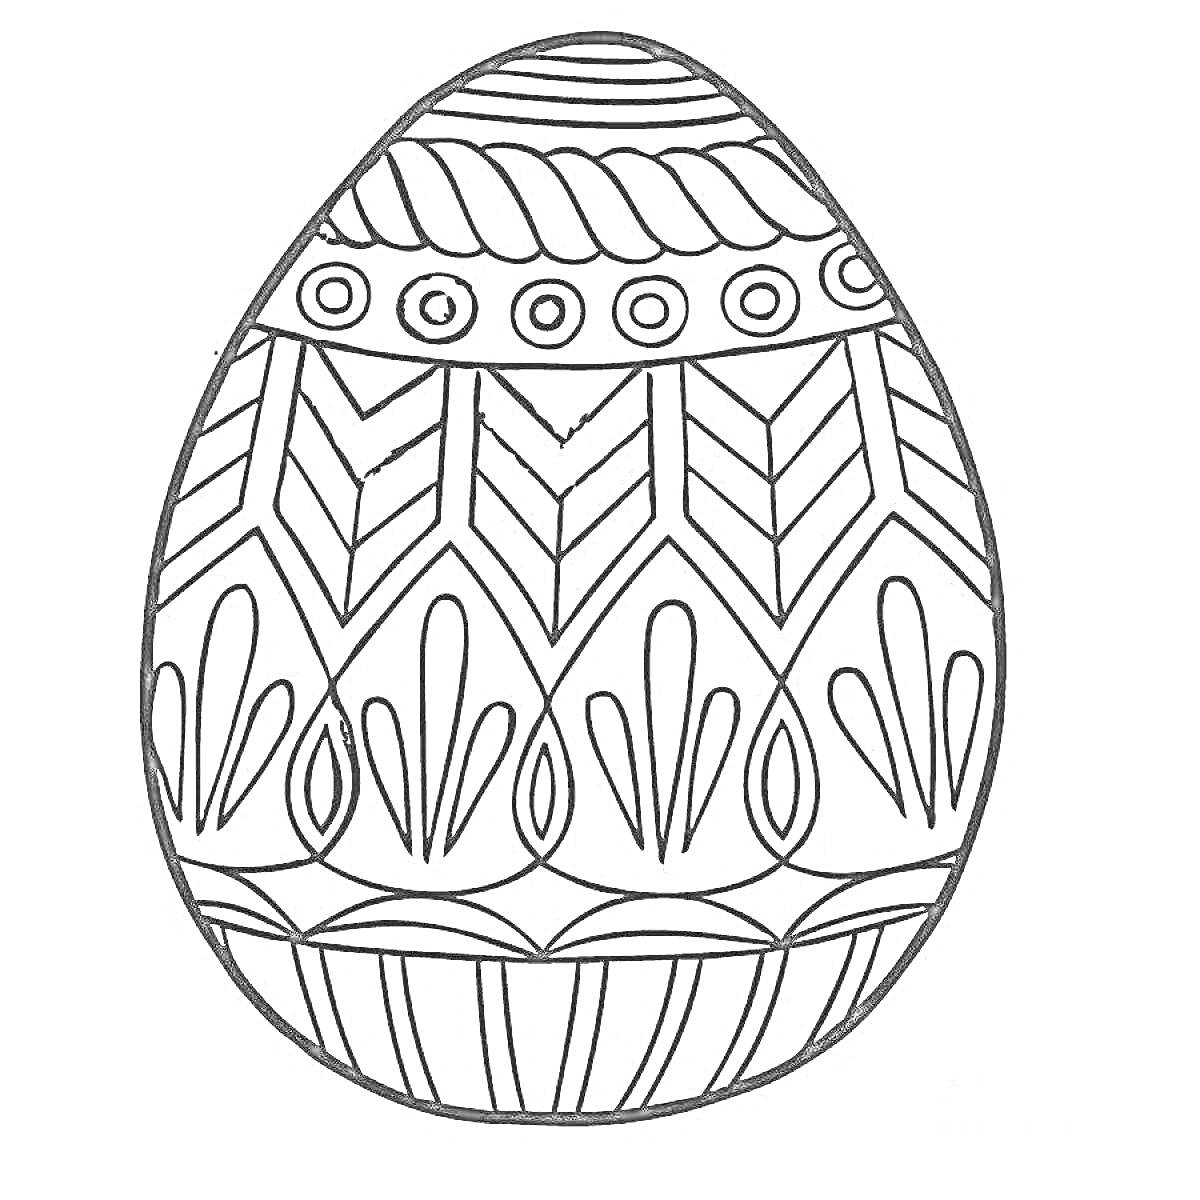 Раскраска Праздничное пасхальное яйцо с геометрическими узорами и цветочными элементами